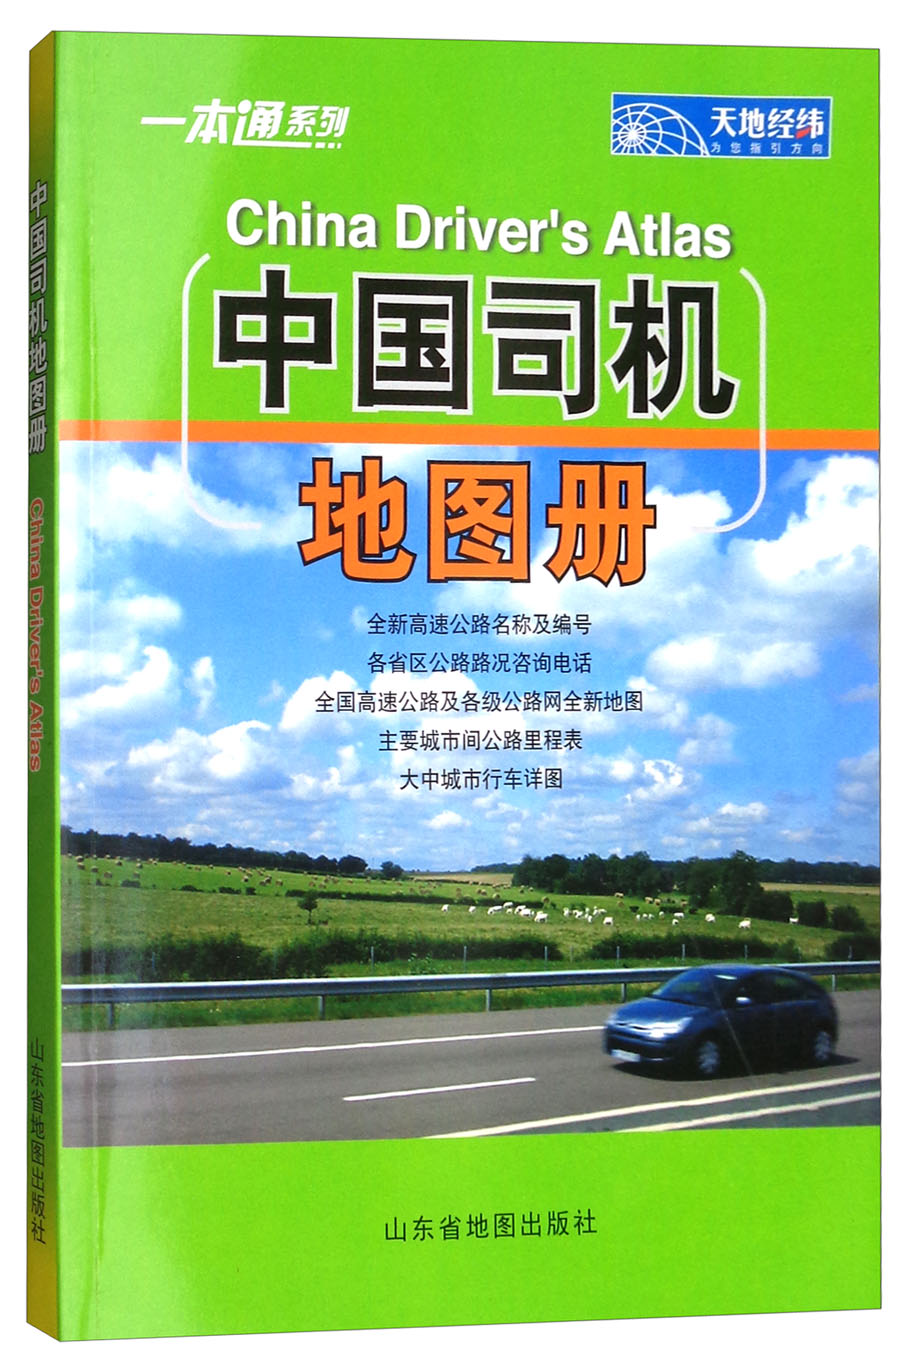 2018年中国司机地图册 mobi格式下载